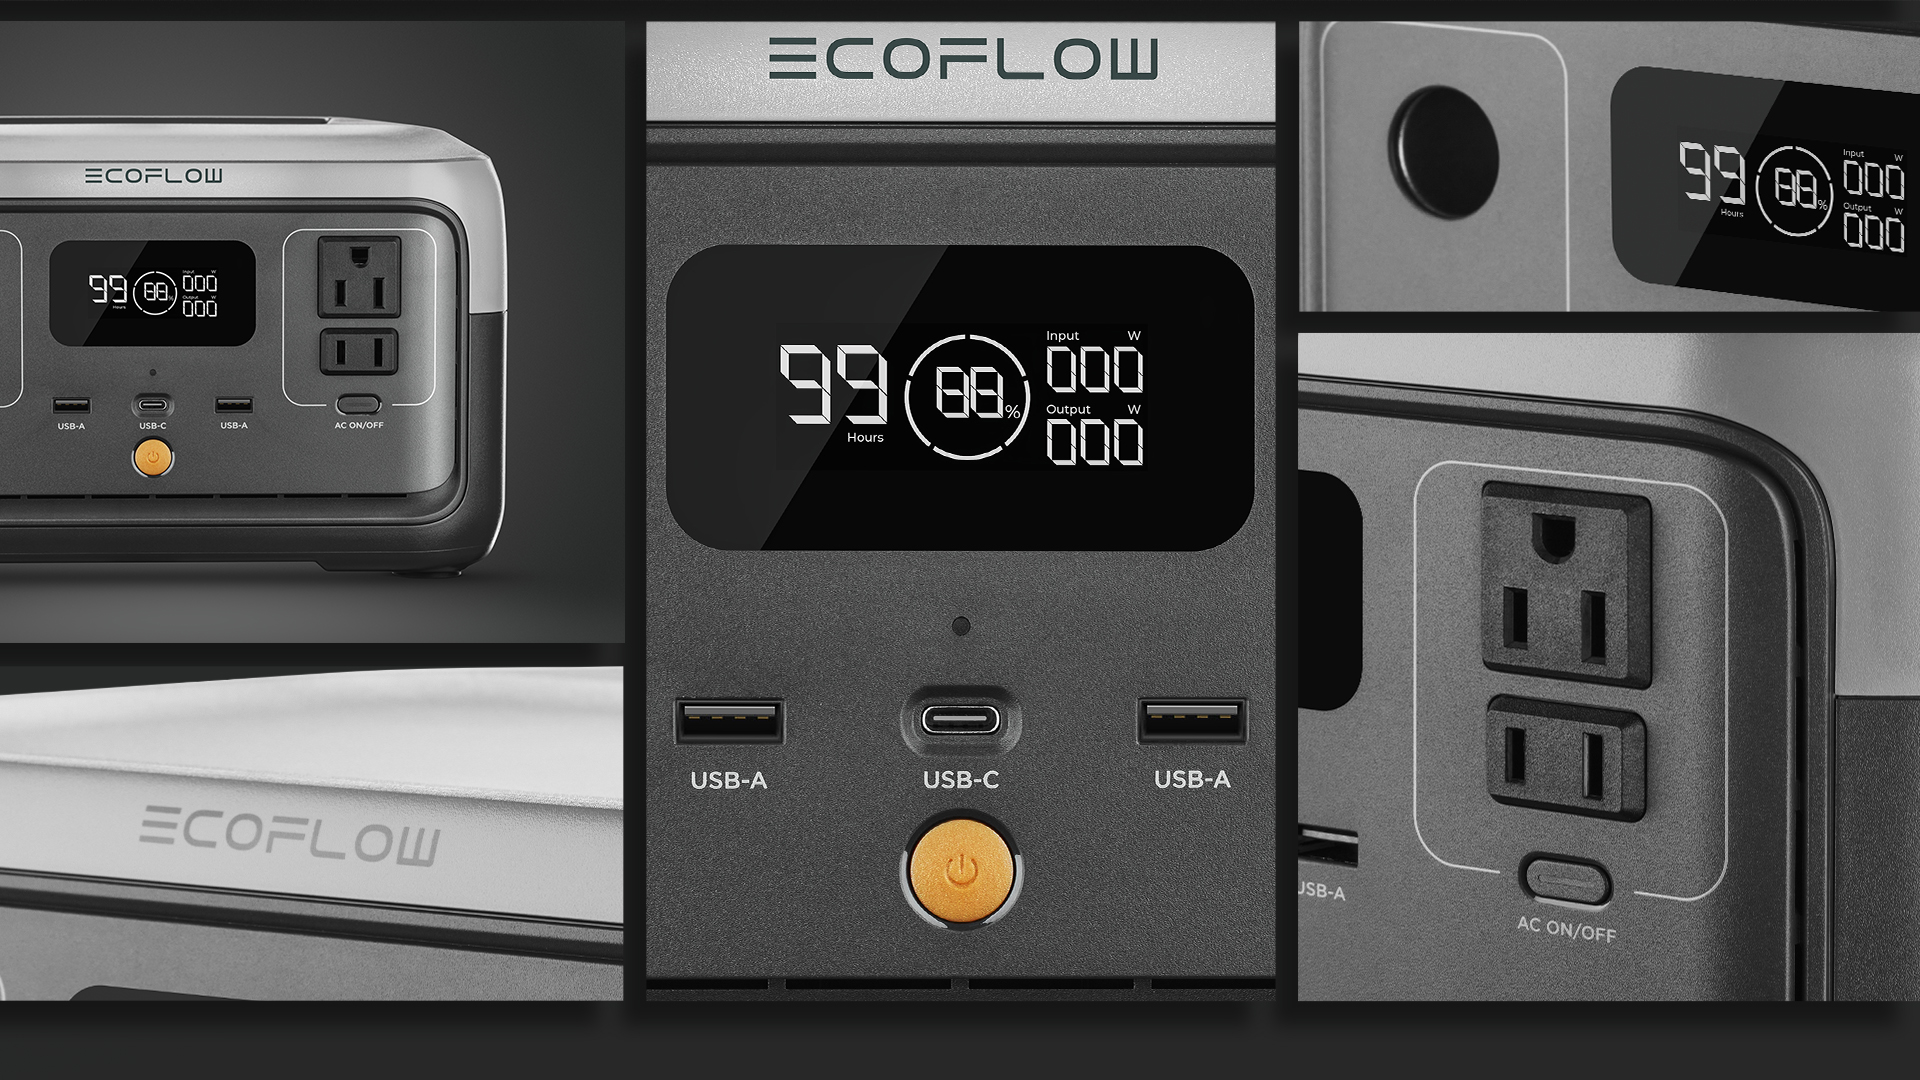 Advertisement electronic Ecoflow product close-up shot. Photographer by Isa Aydin NJ NY LA